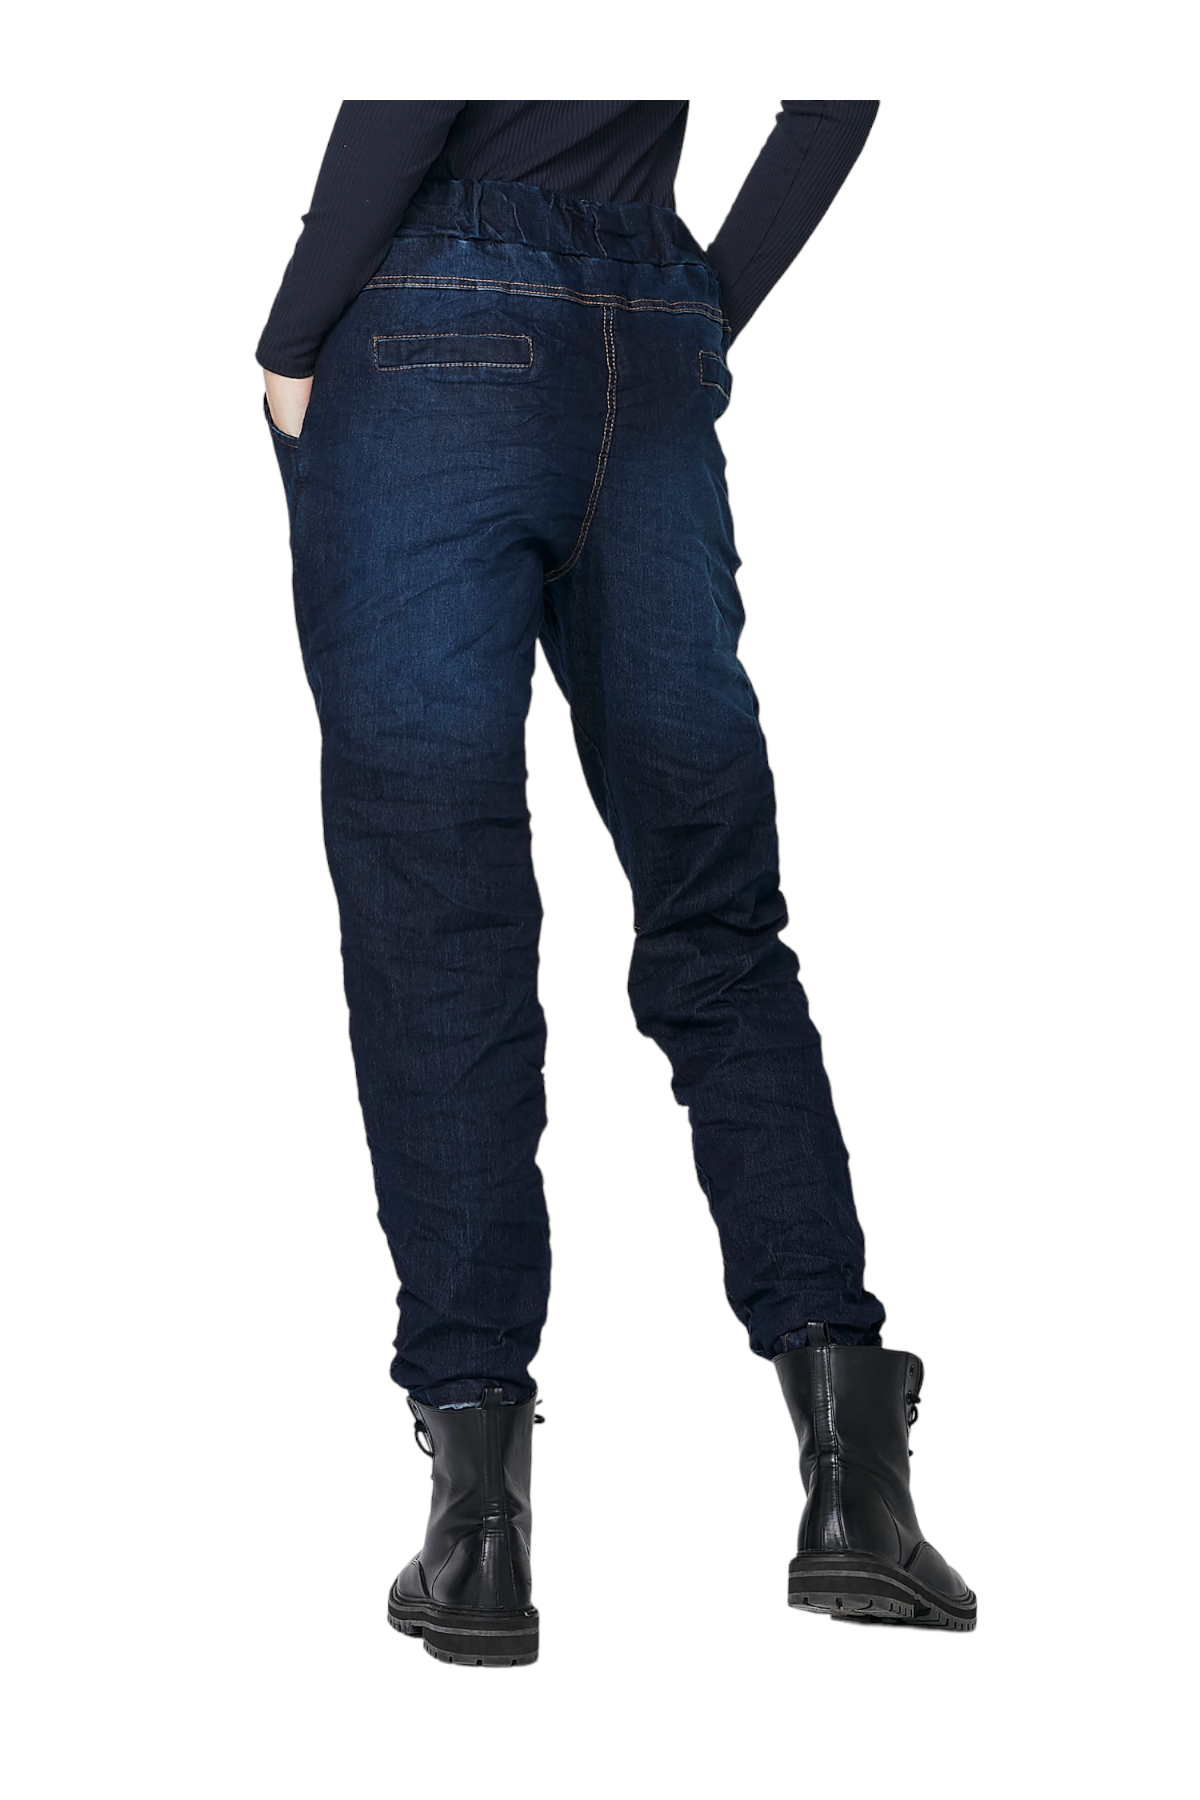 NÜ DENMARK jeans broek RAMINA